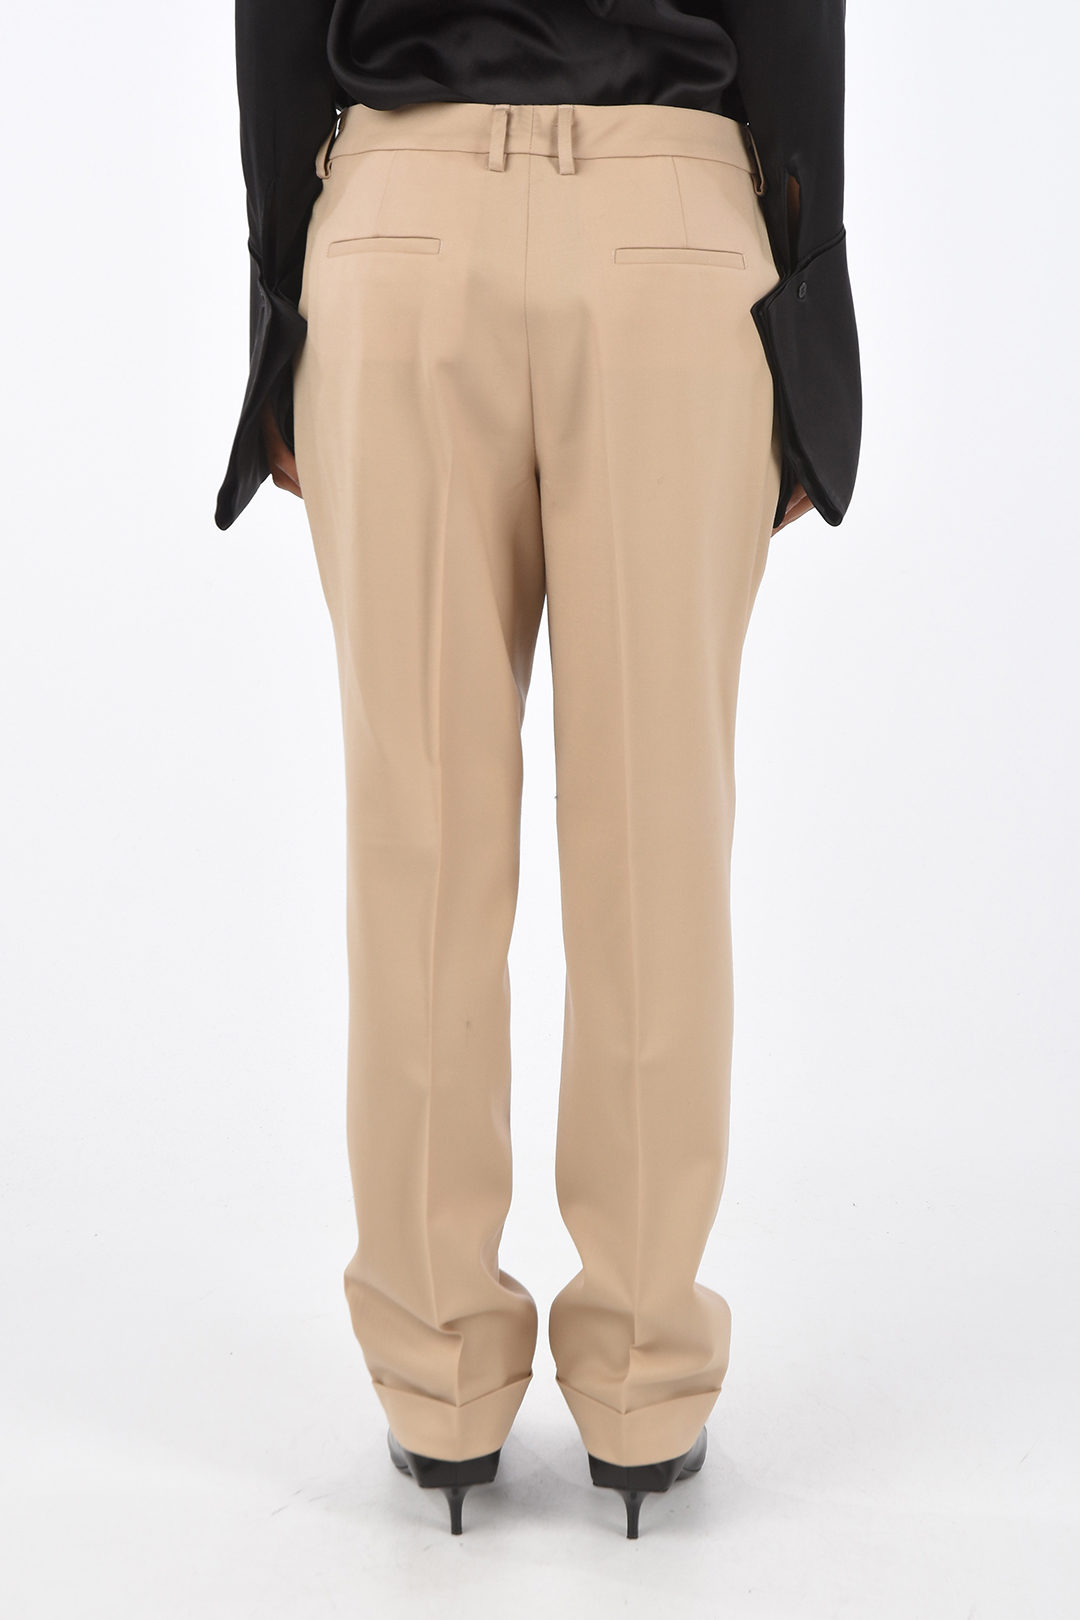 Beige Terry Trousers by Filippa K on Sale